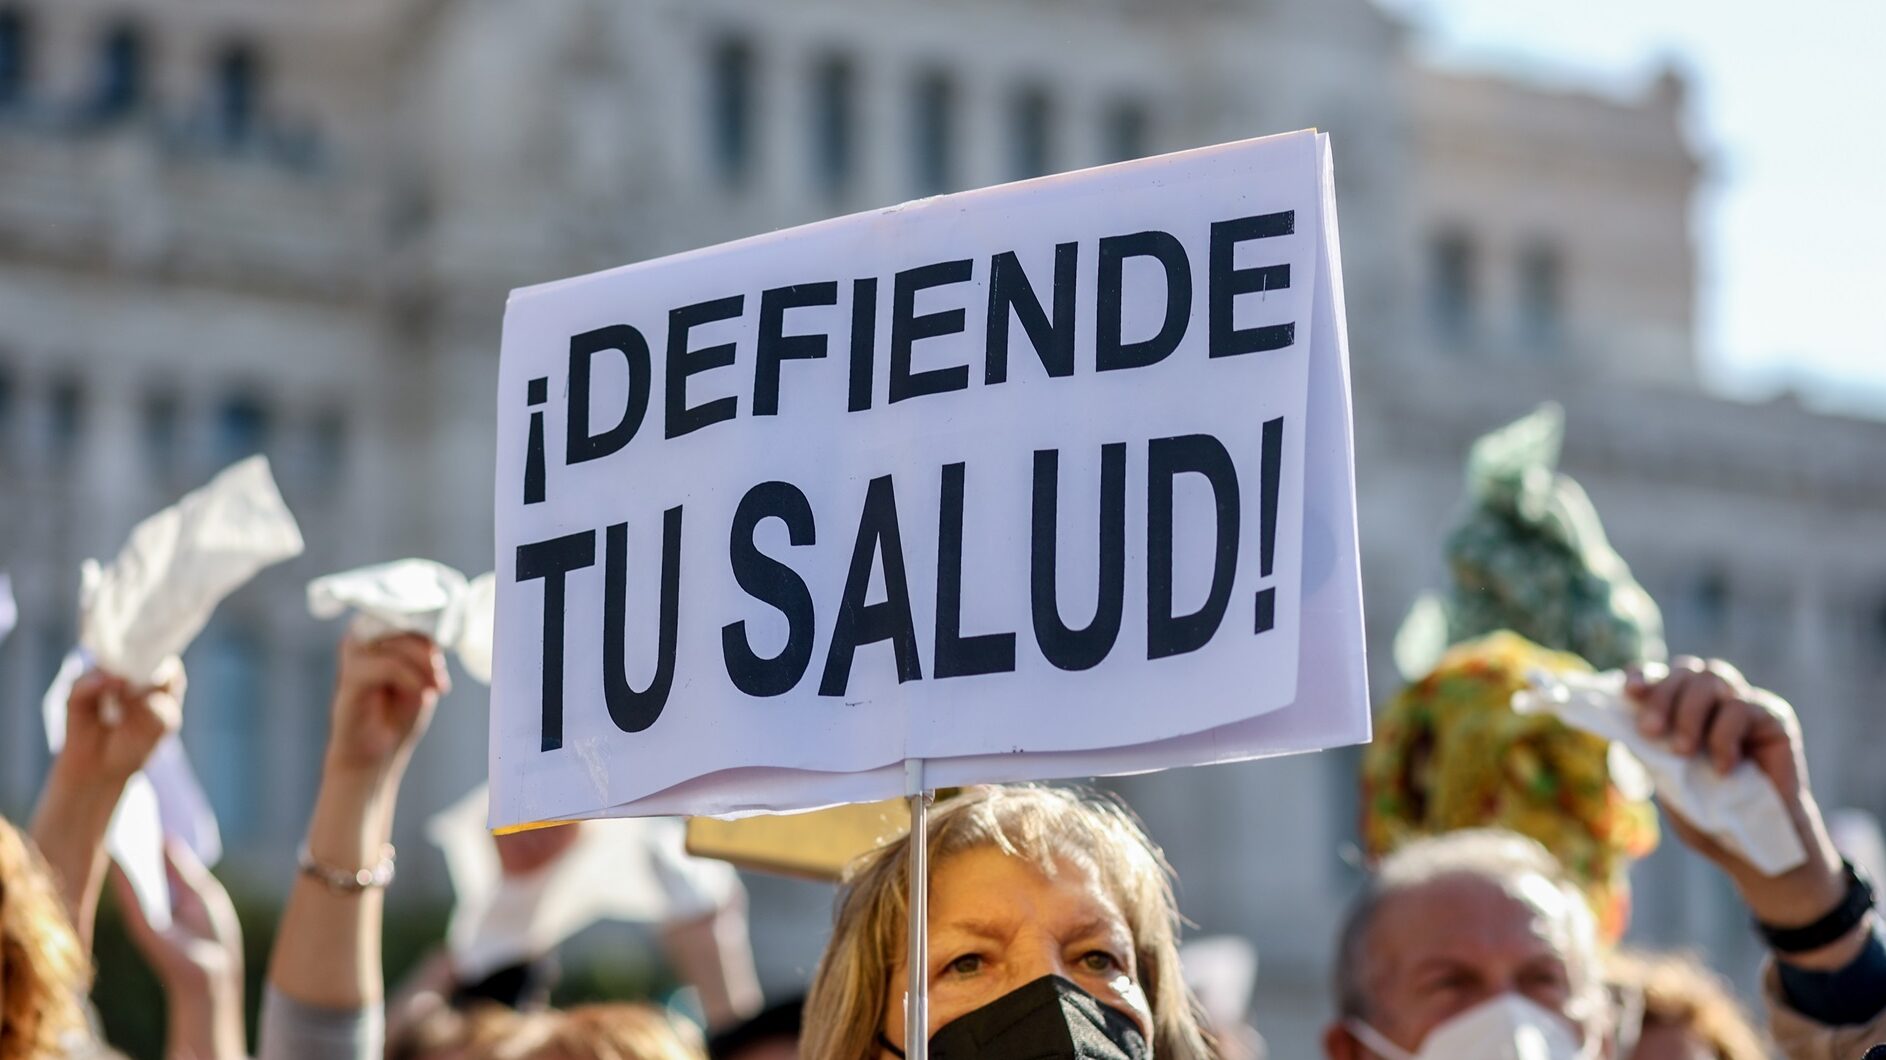 Comienza una huelga de médicos de familia y pediatras este lunes en Madrid